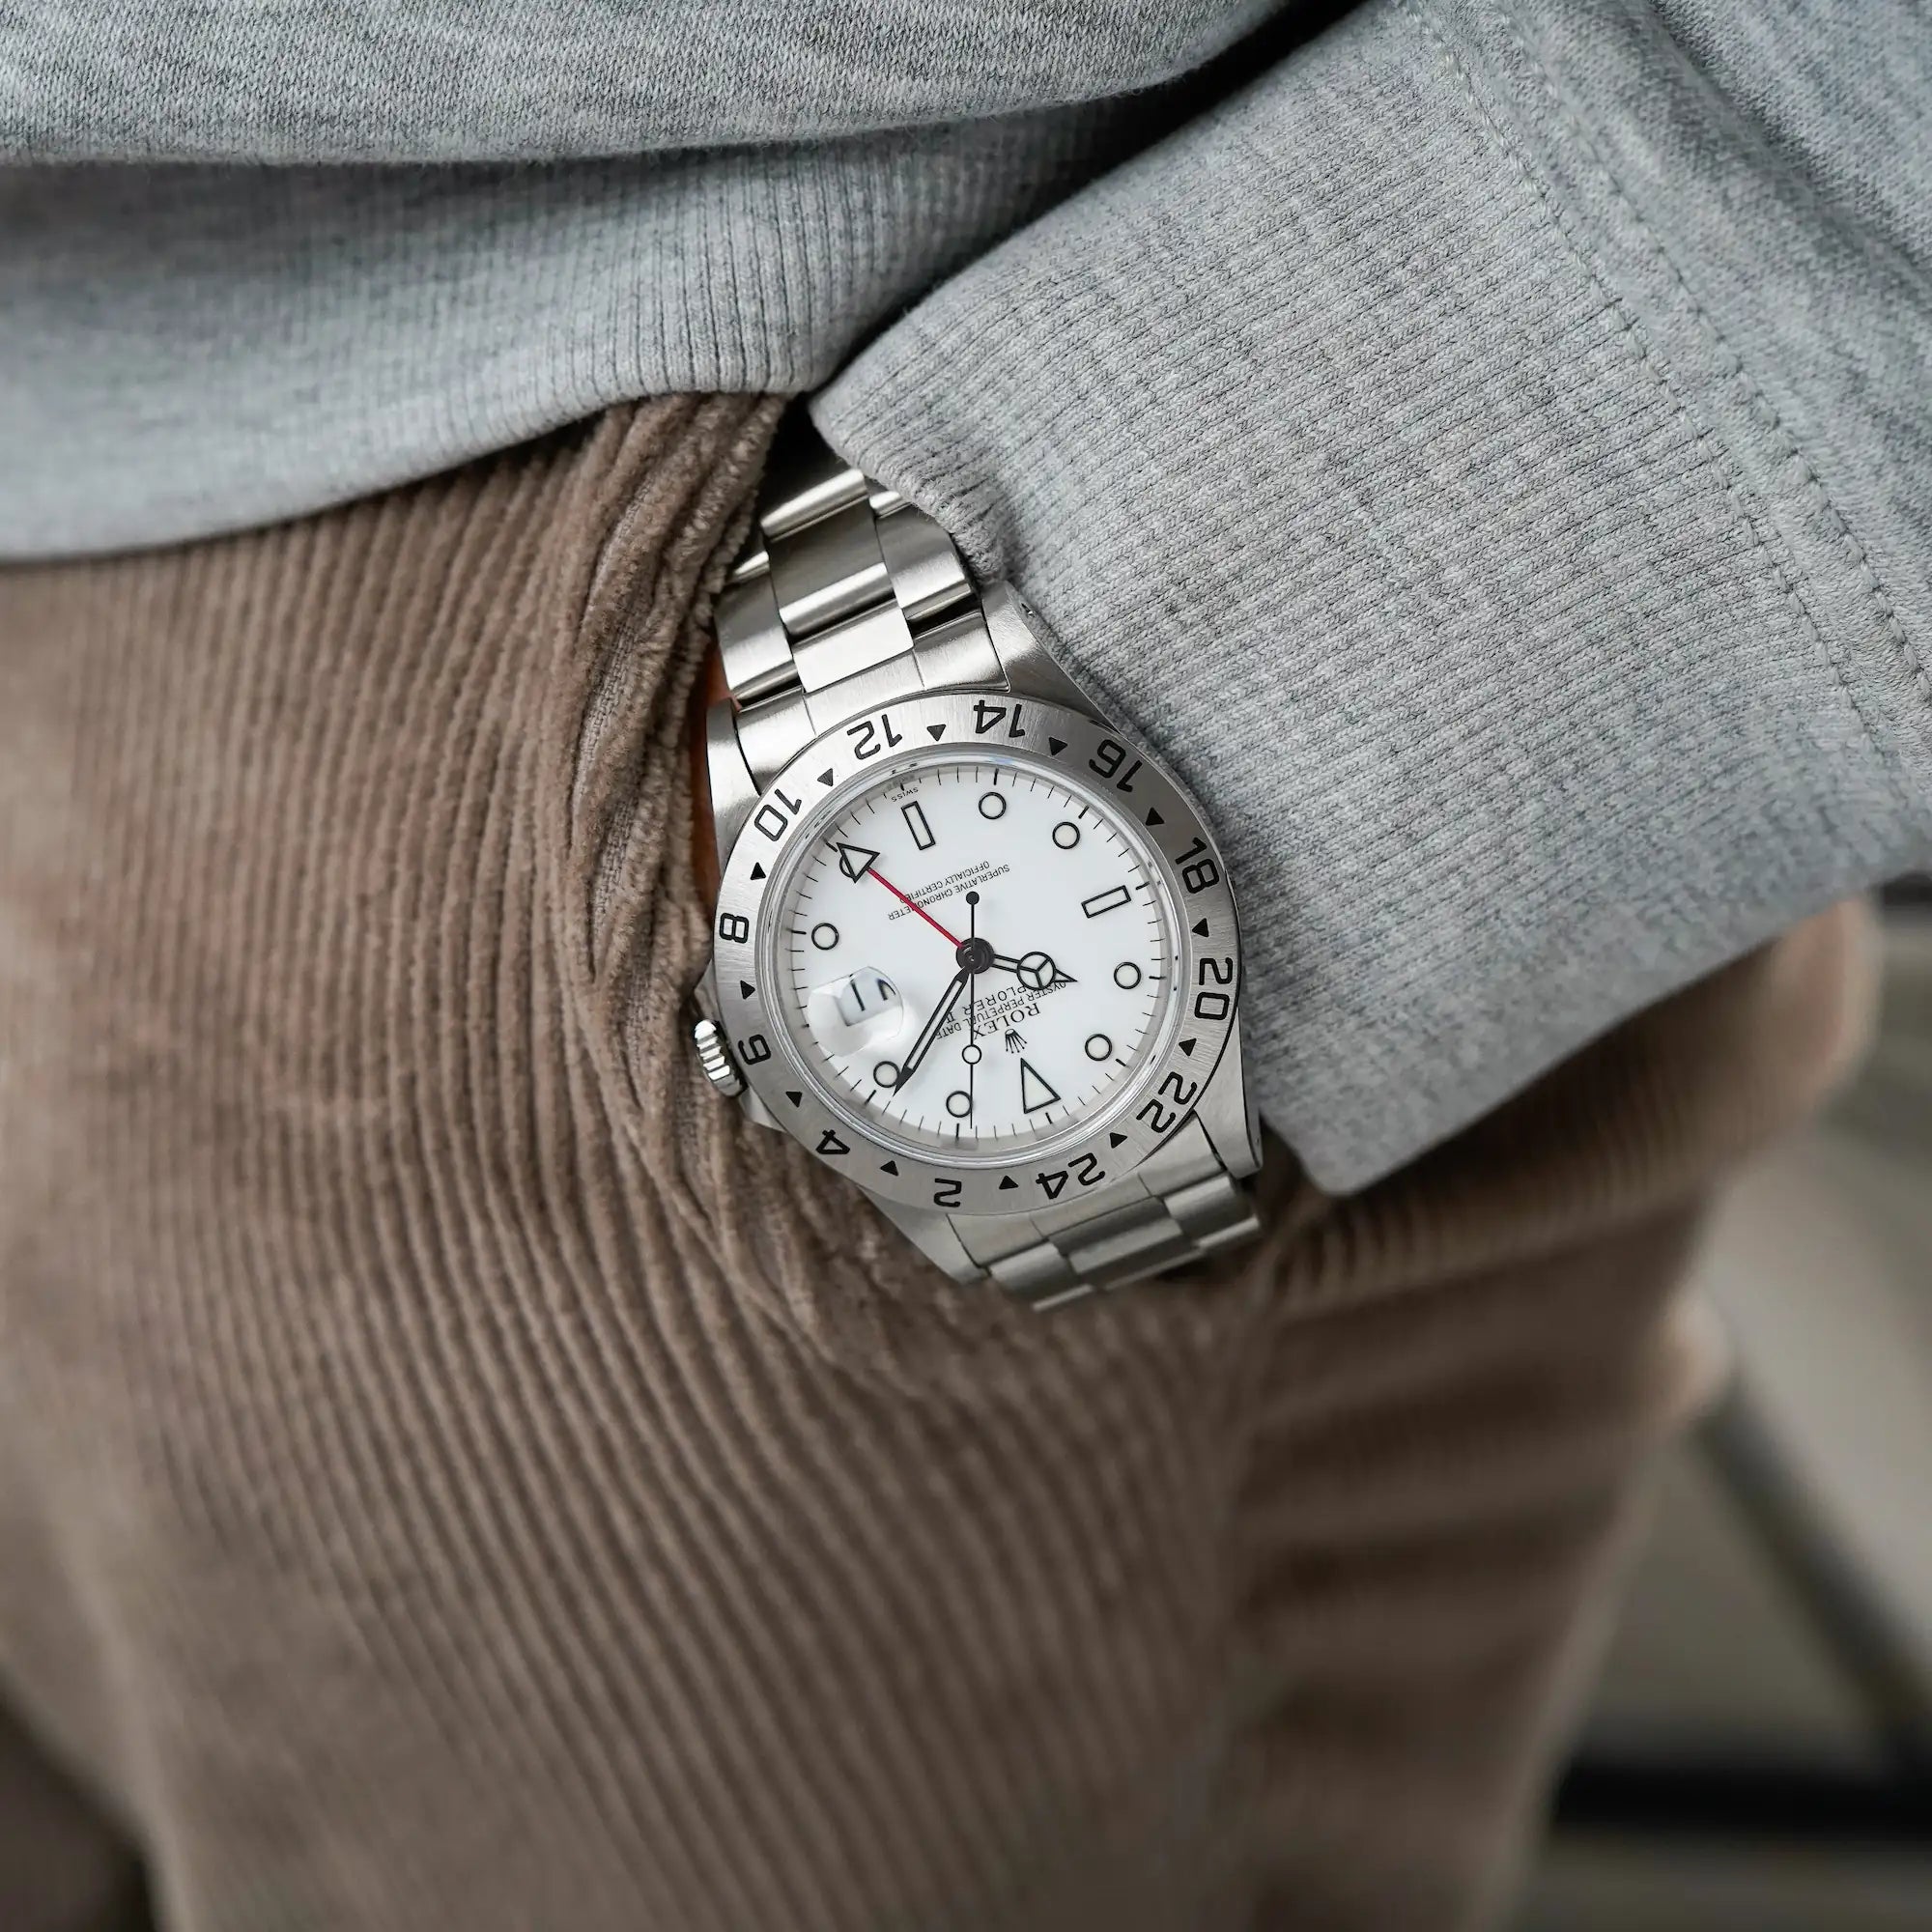 Mann trägt die Rolex Explorer 2 mit einem weißen "Swiss-Only"-Zifferblatt an seinem Handgelenk, während seine Hand in der Hosentasche steckt